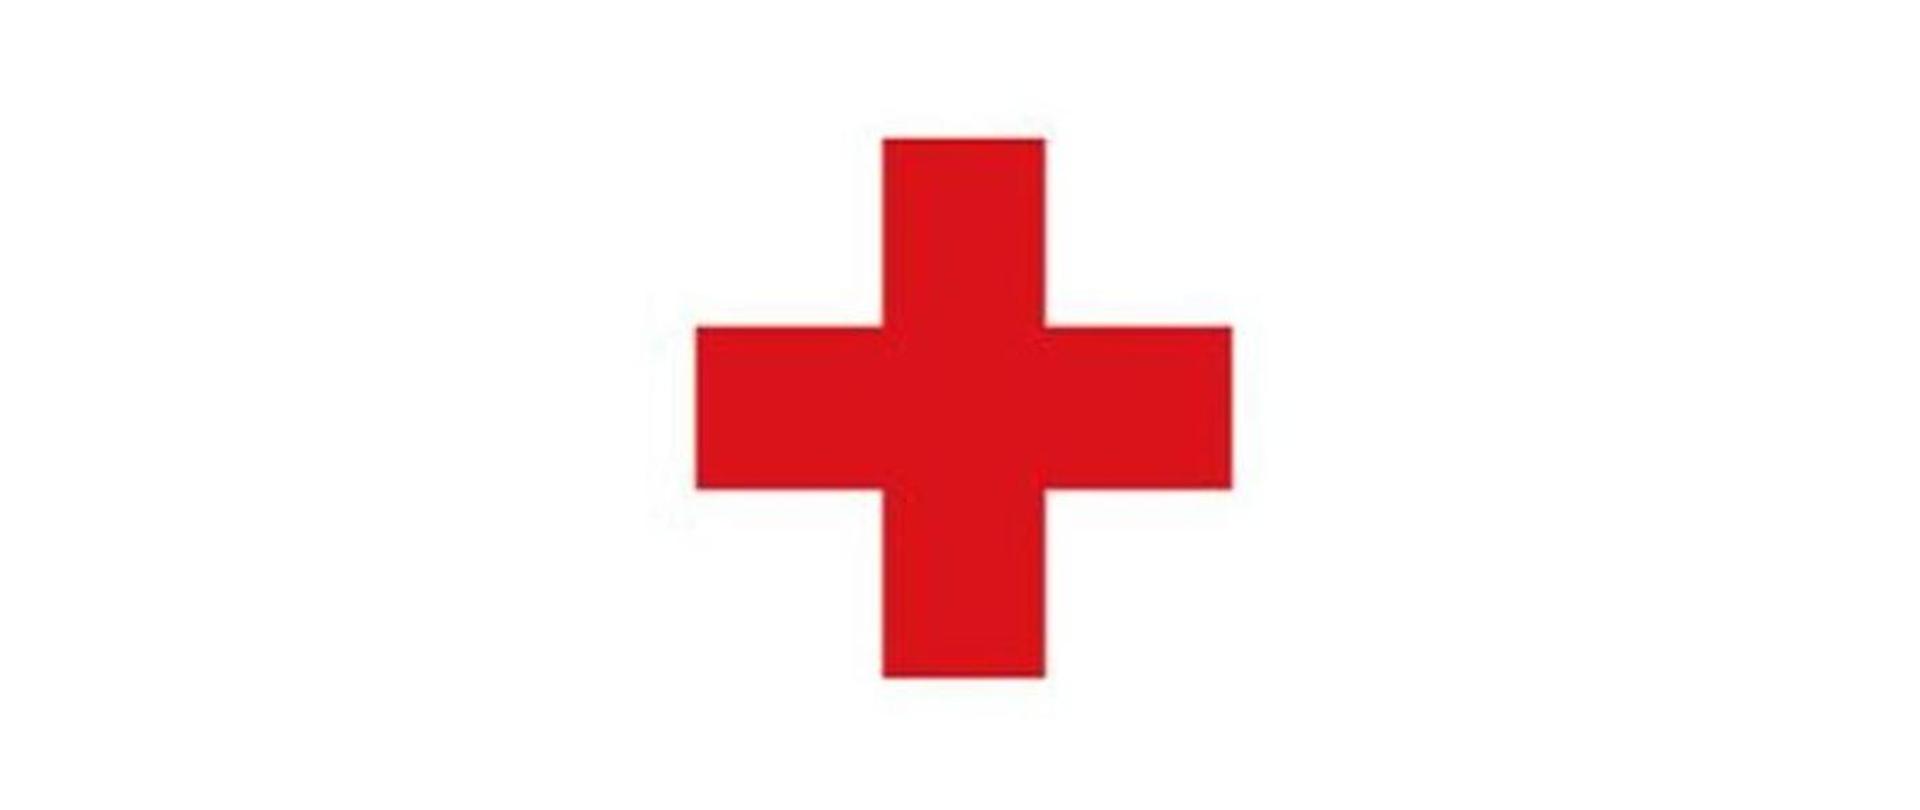 Na zdjęciu widać znak czerwonego krzyża. czerwony krzyż na białym tle